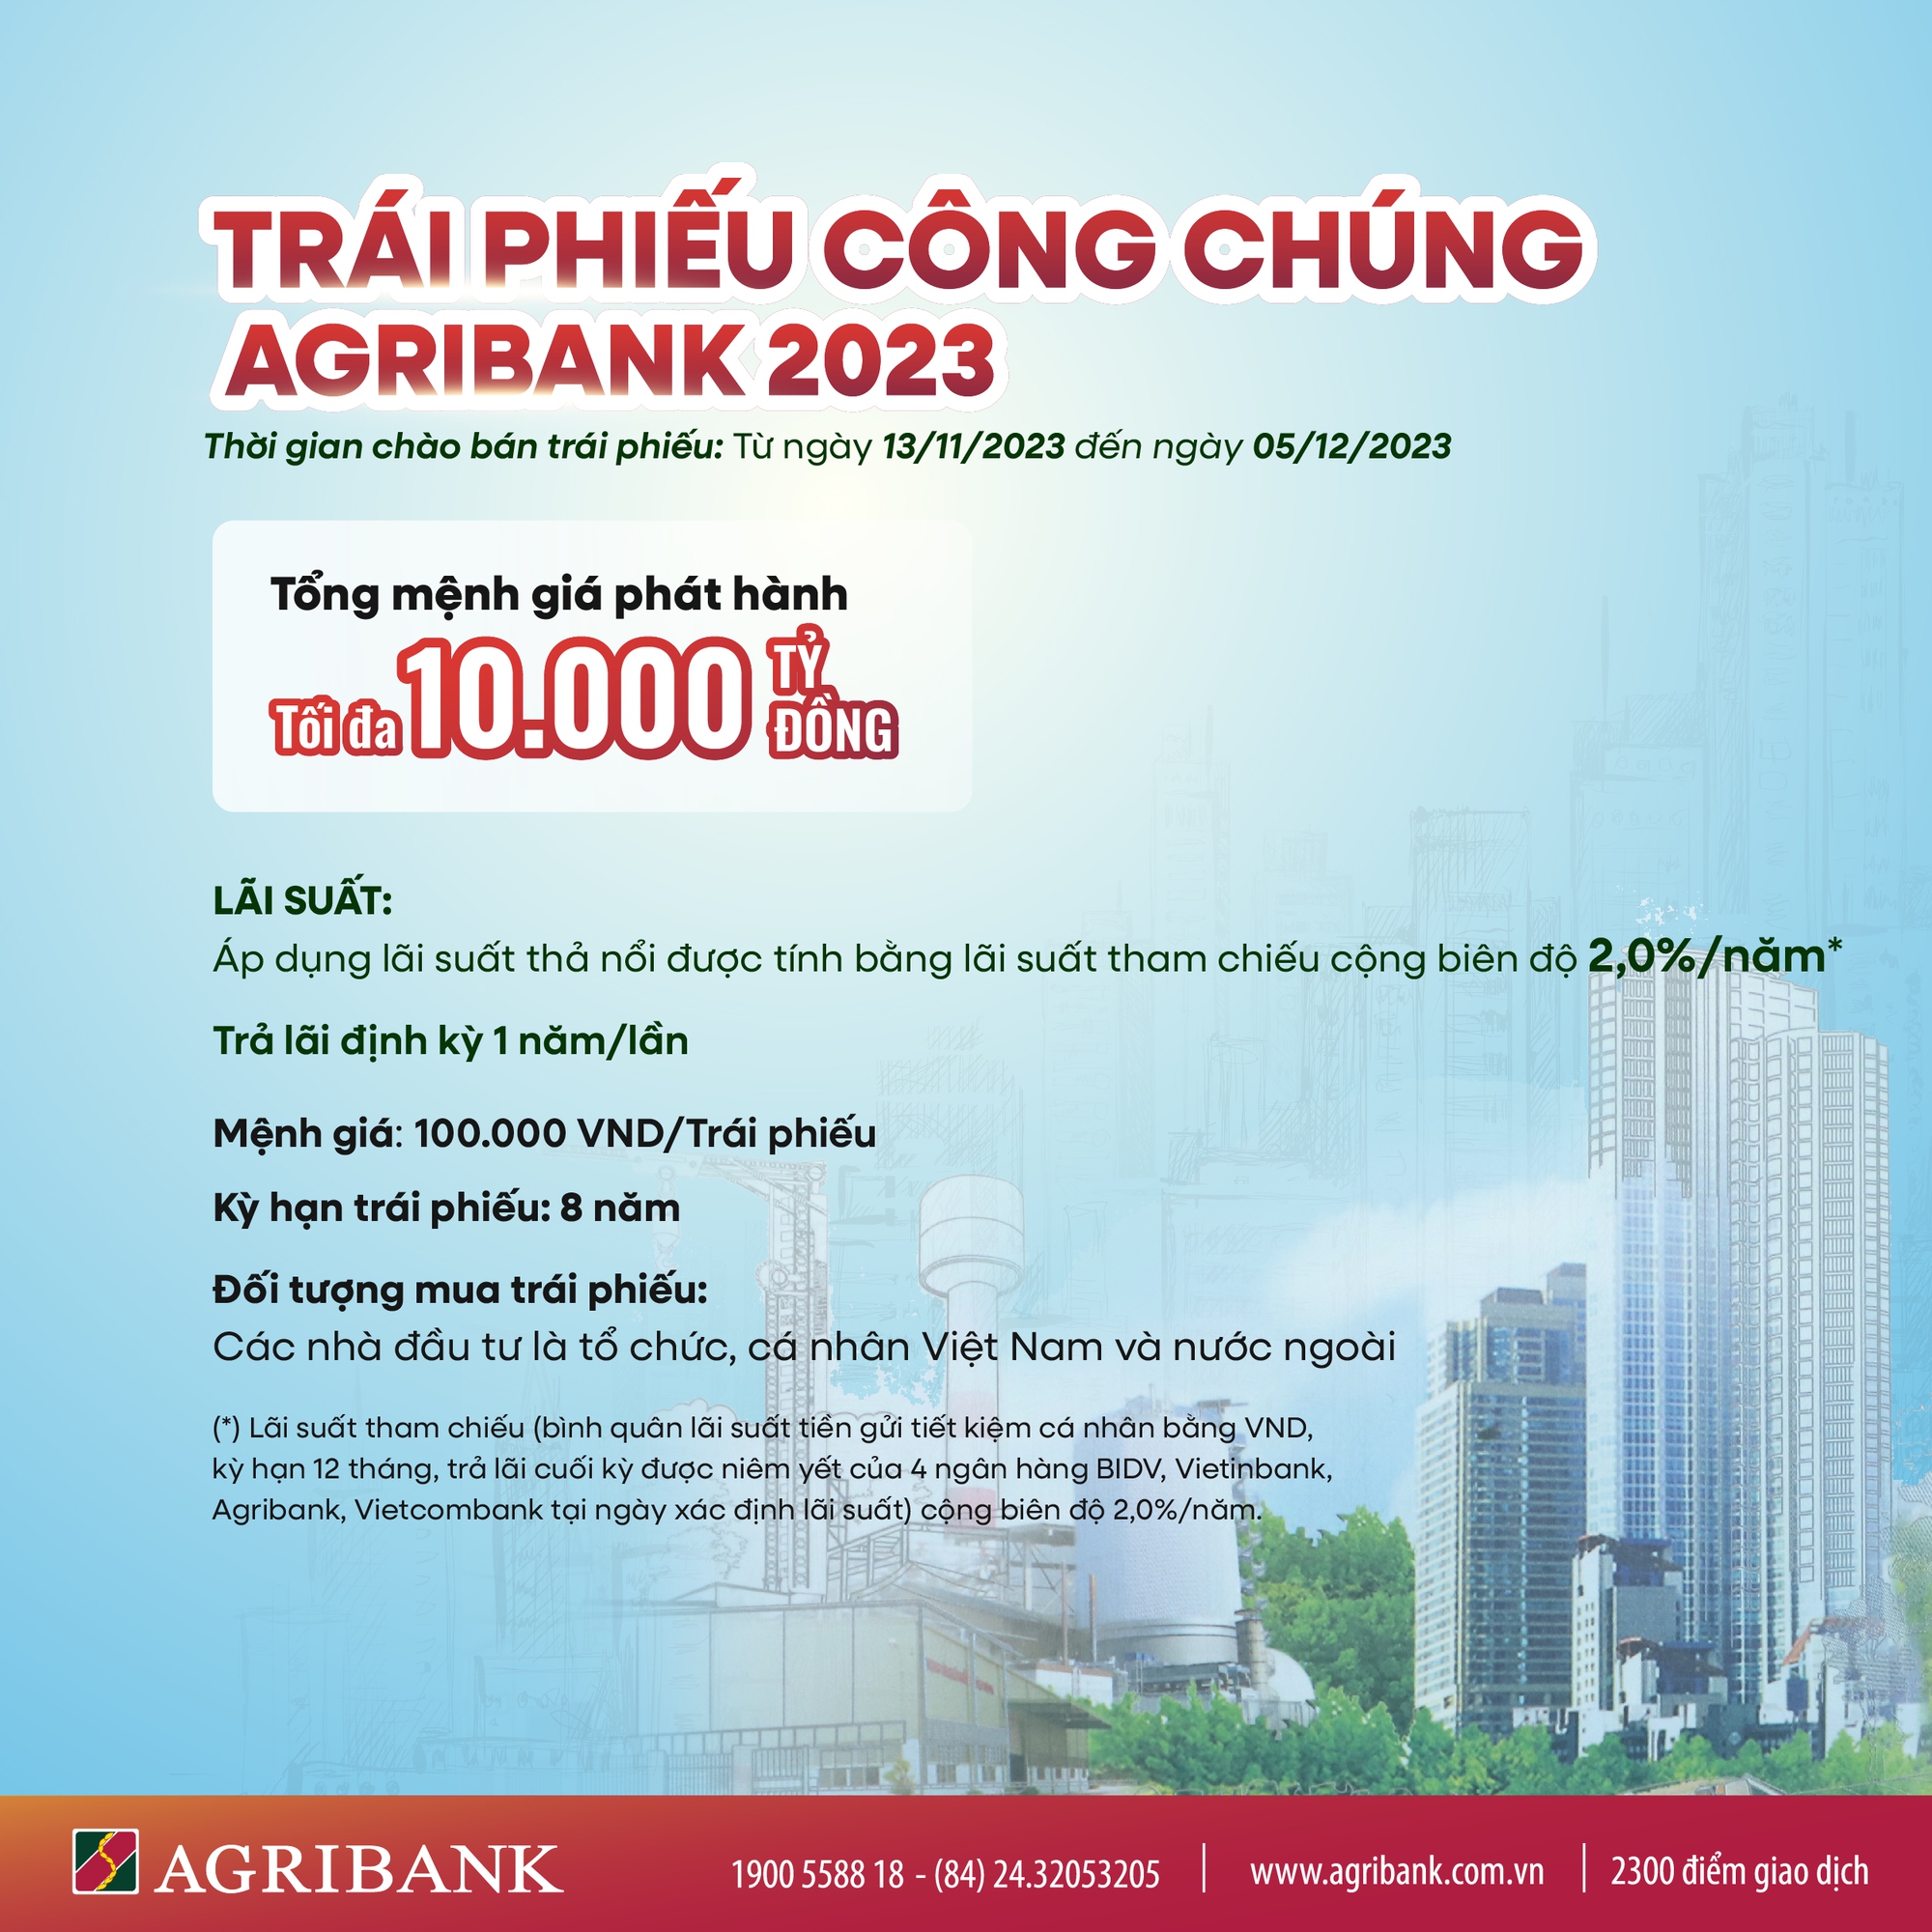 Agribank phát hành 10.000 tỷ đồng trái phiếu ra công chúng năm 2023 - Ảnh 2.